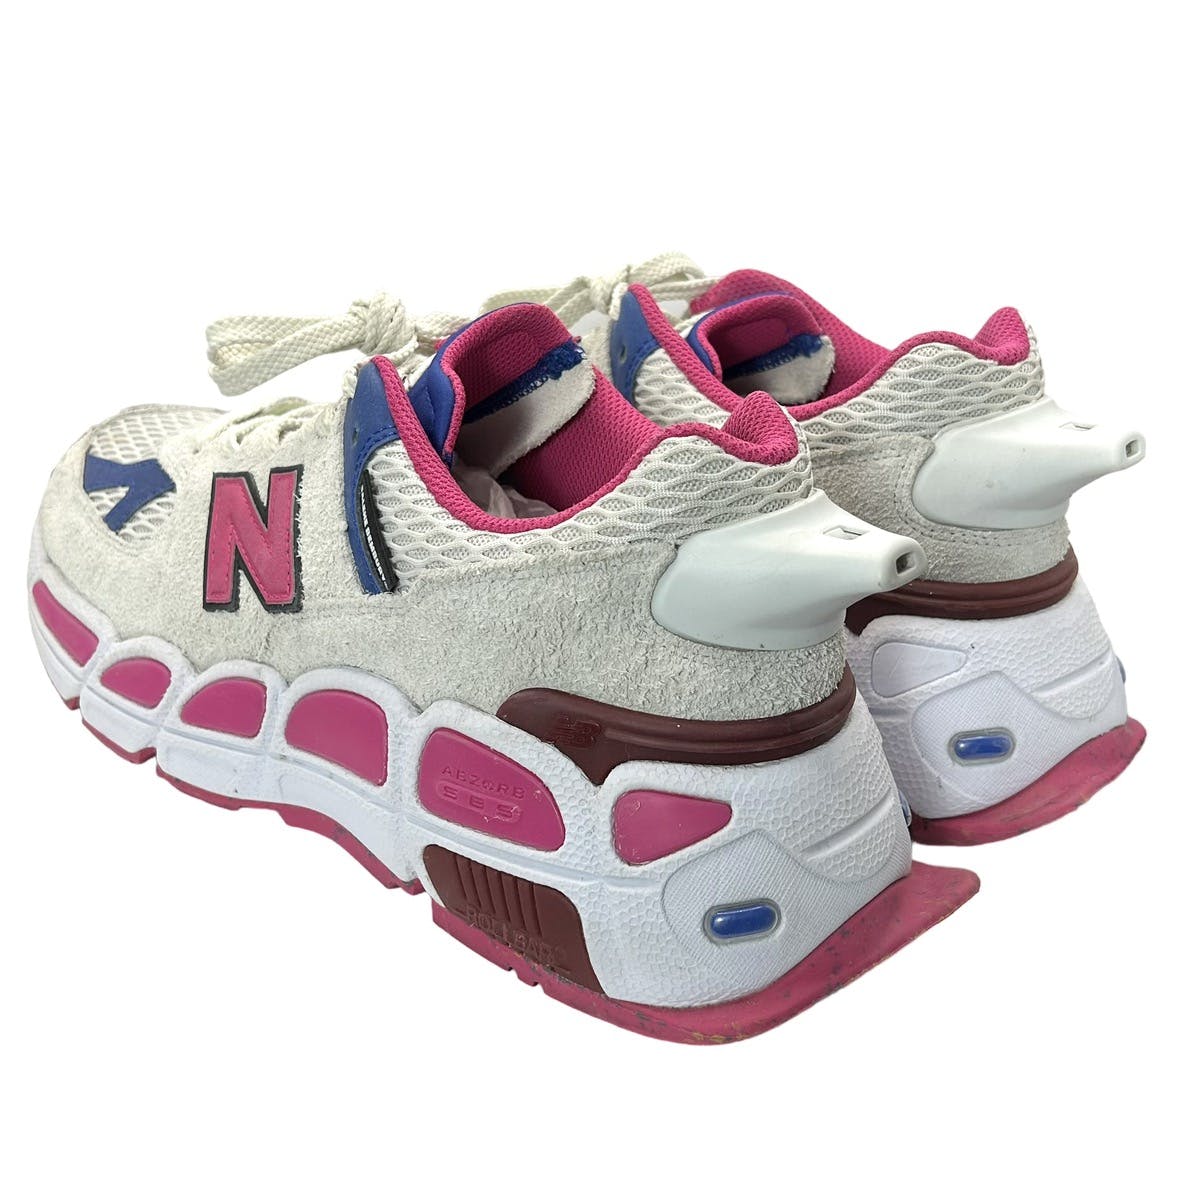 NB 574 “Yurt” Chunky Sneakers - 5